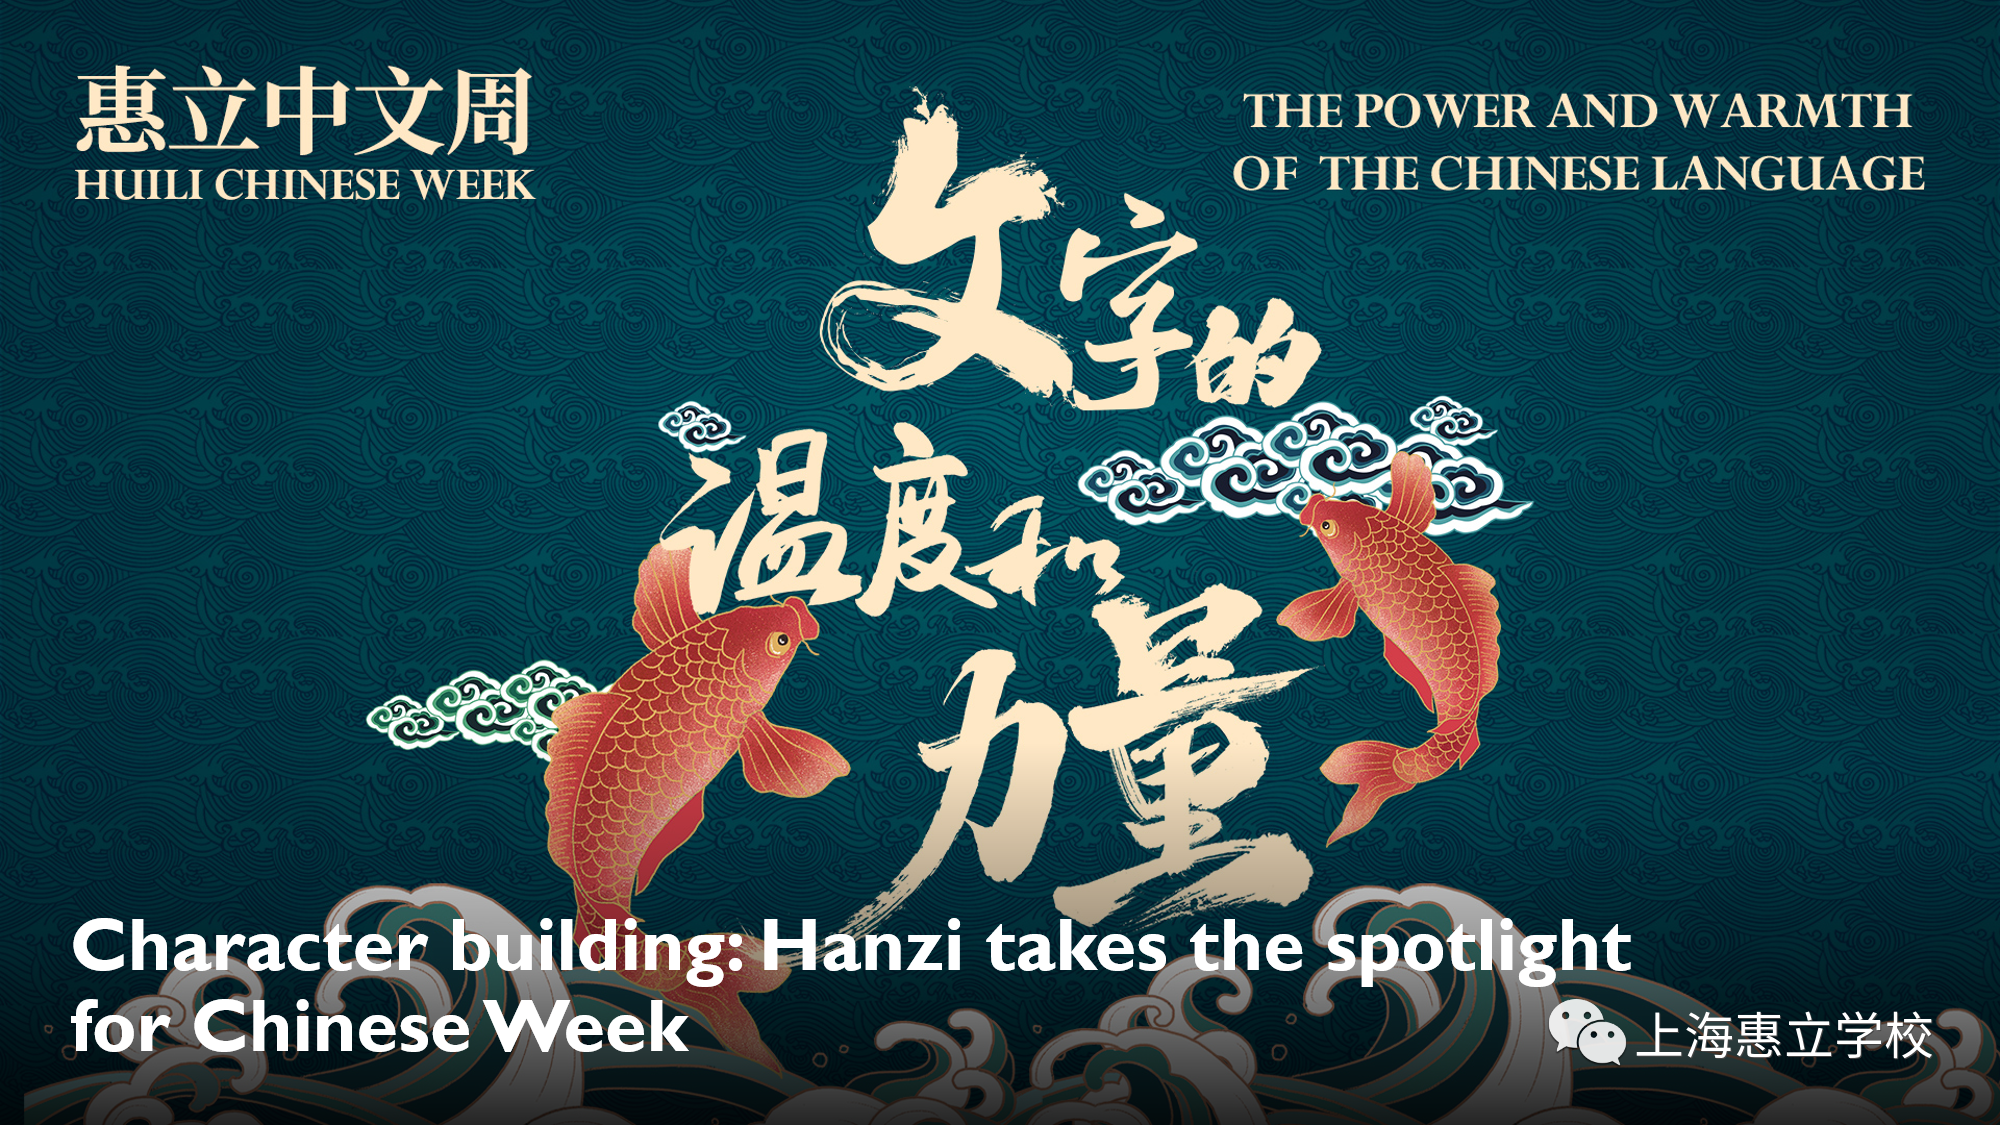 Chinese week